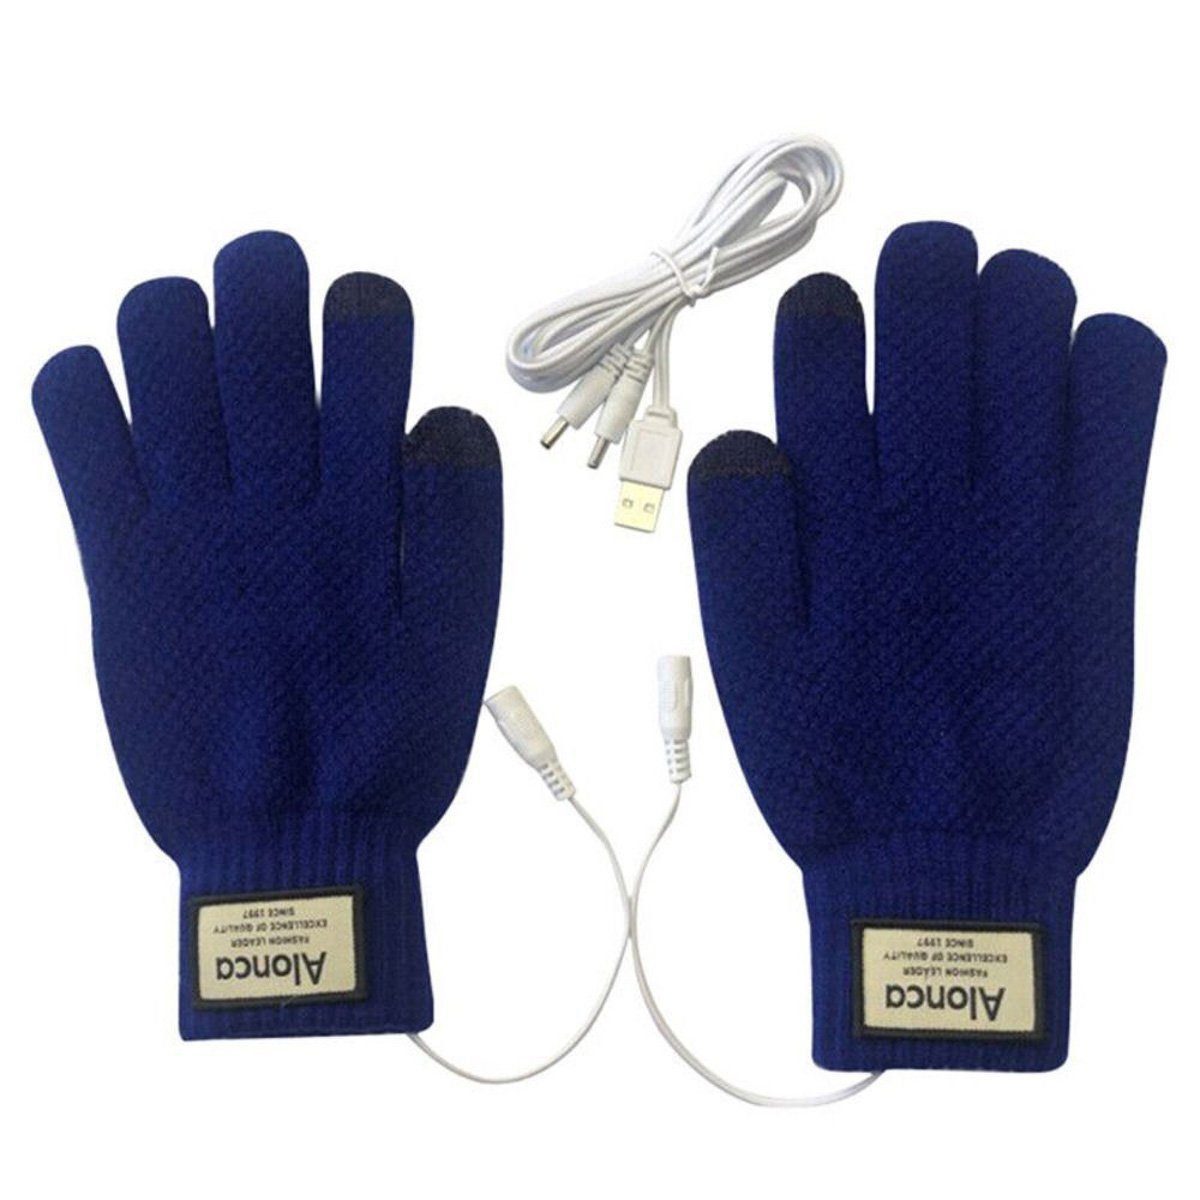 Strickhandschuhe USB-wiederaufladbare Sporthandschuhe Lederhandschuhe blau AUKUU Winter-Arbeitshandschuhe